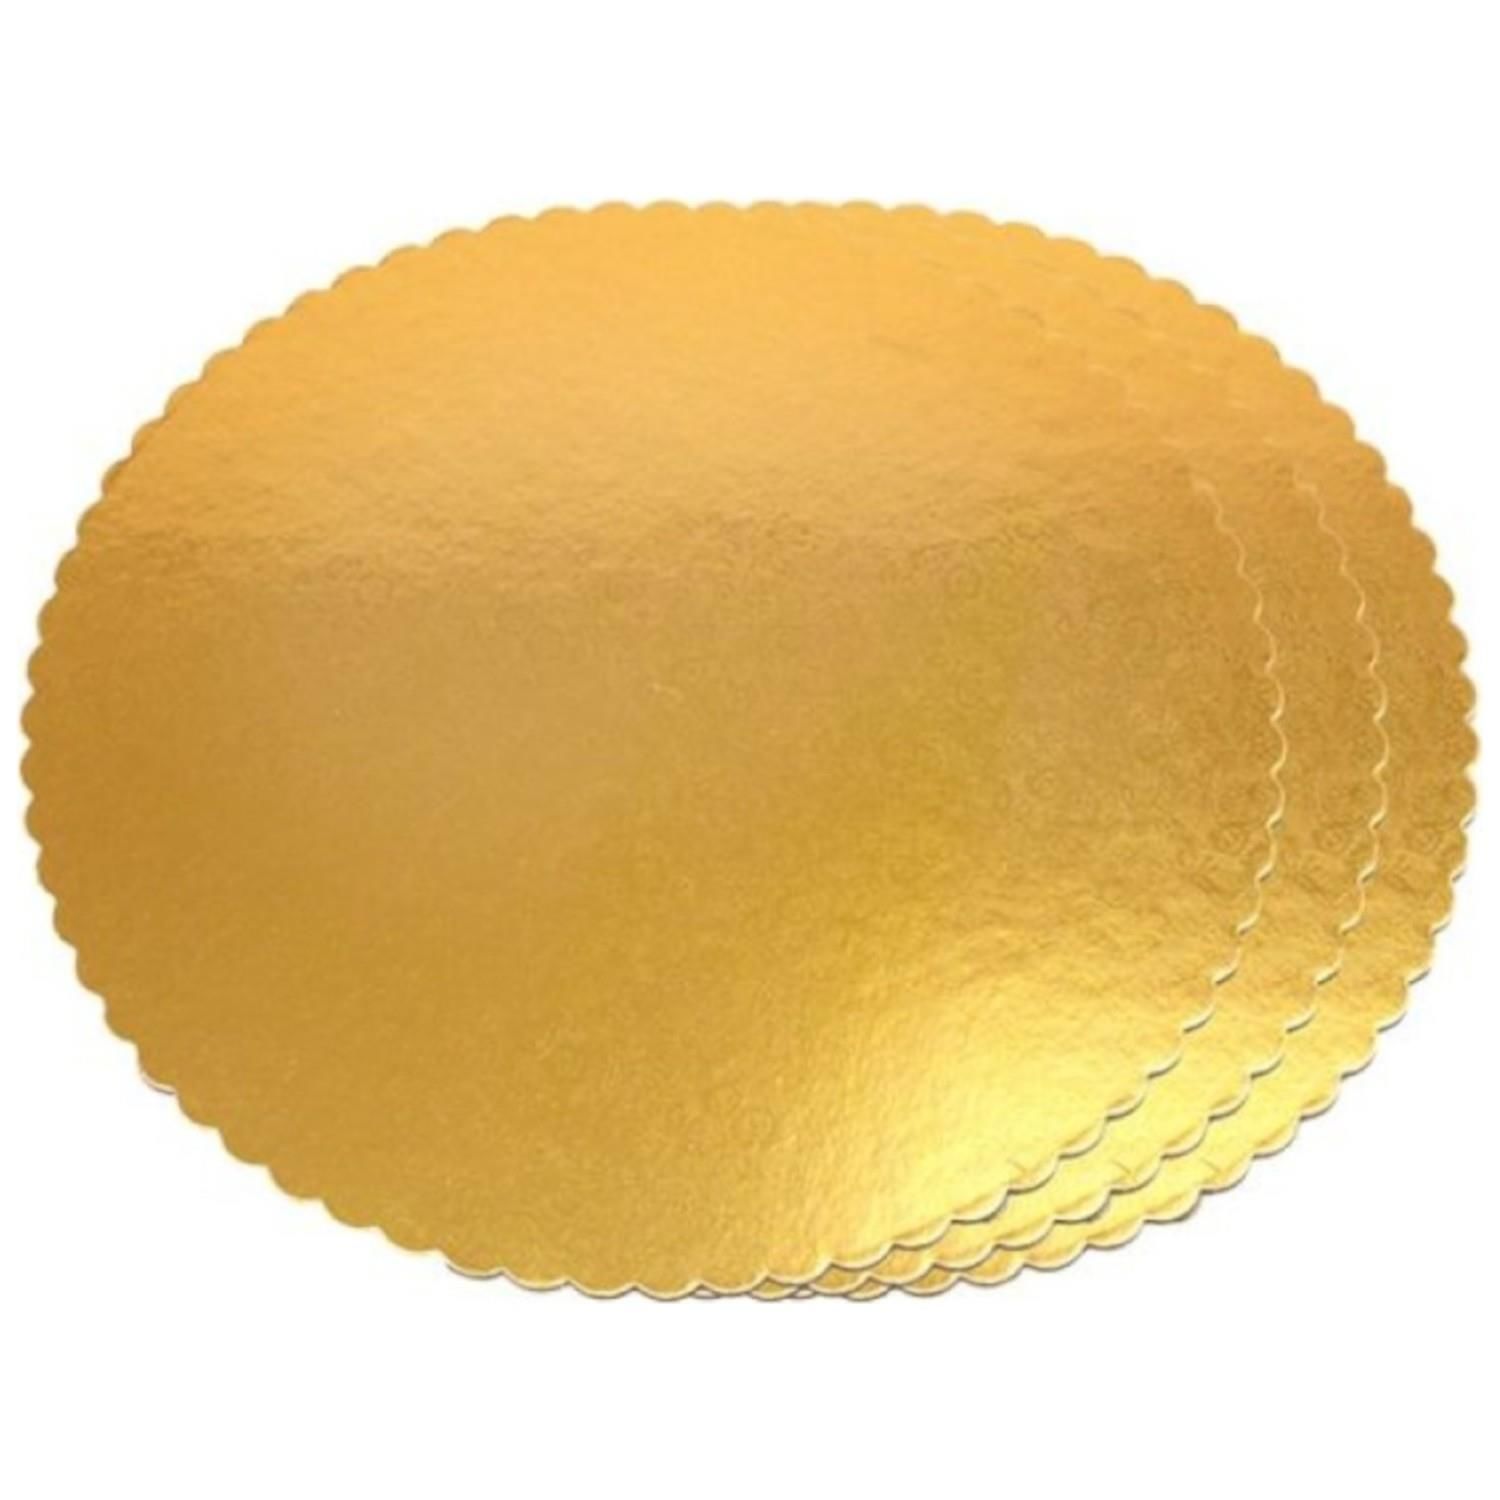 Turta Mendili / Pasta Altlığı Gold -Altın İnce Yuvarlak 24 cm 50 adet